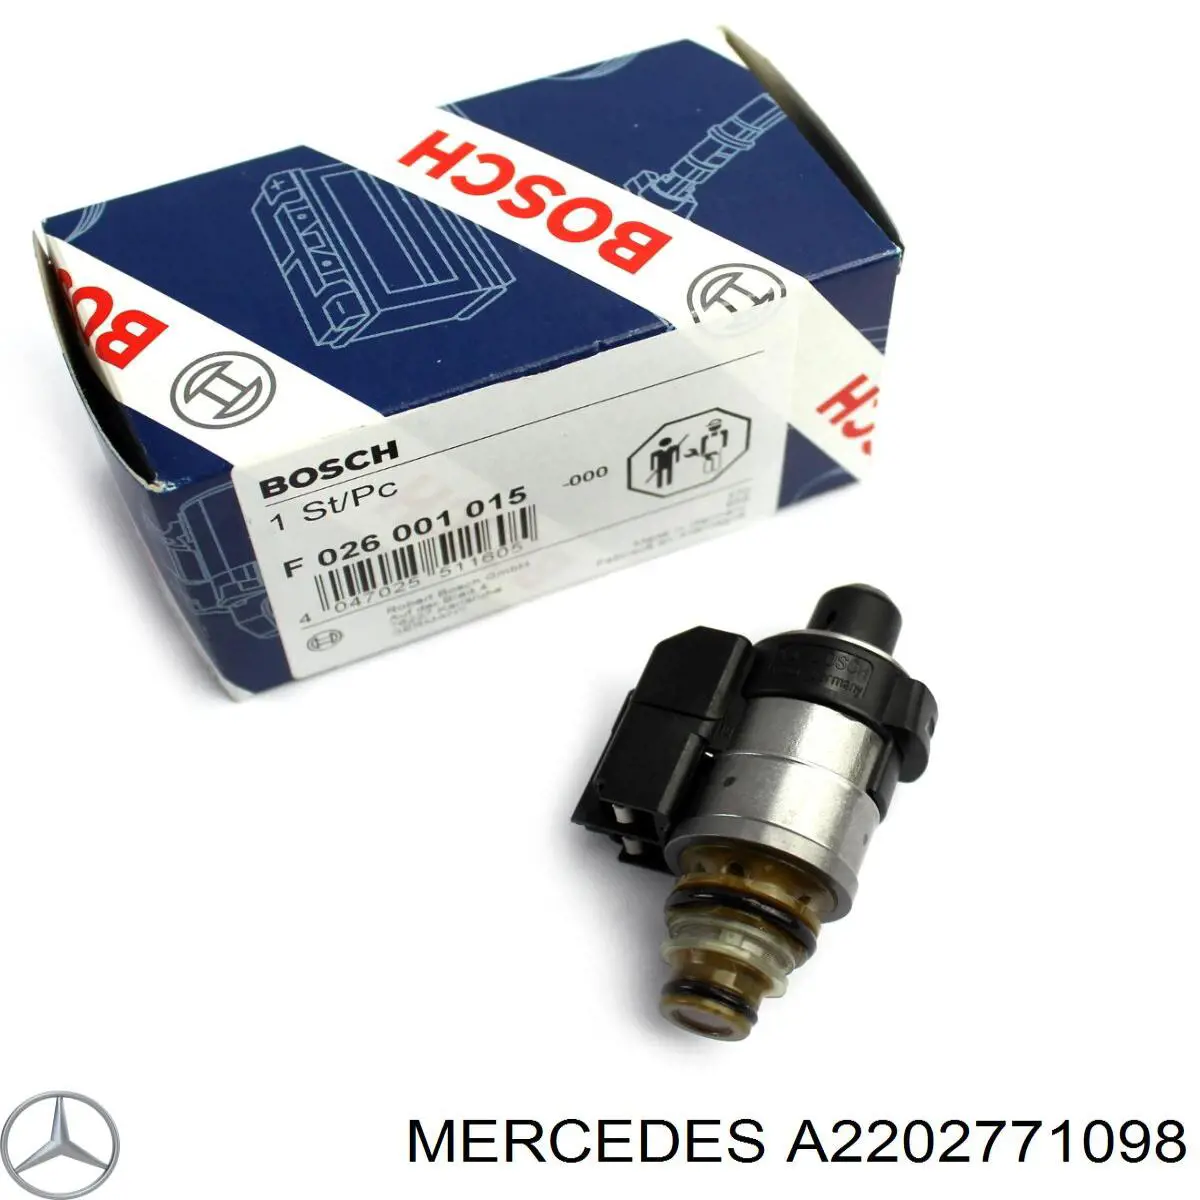 A2202771098 Mercedes solenoide de transmision automatica